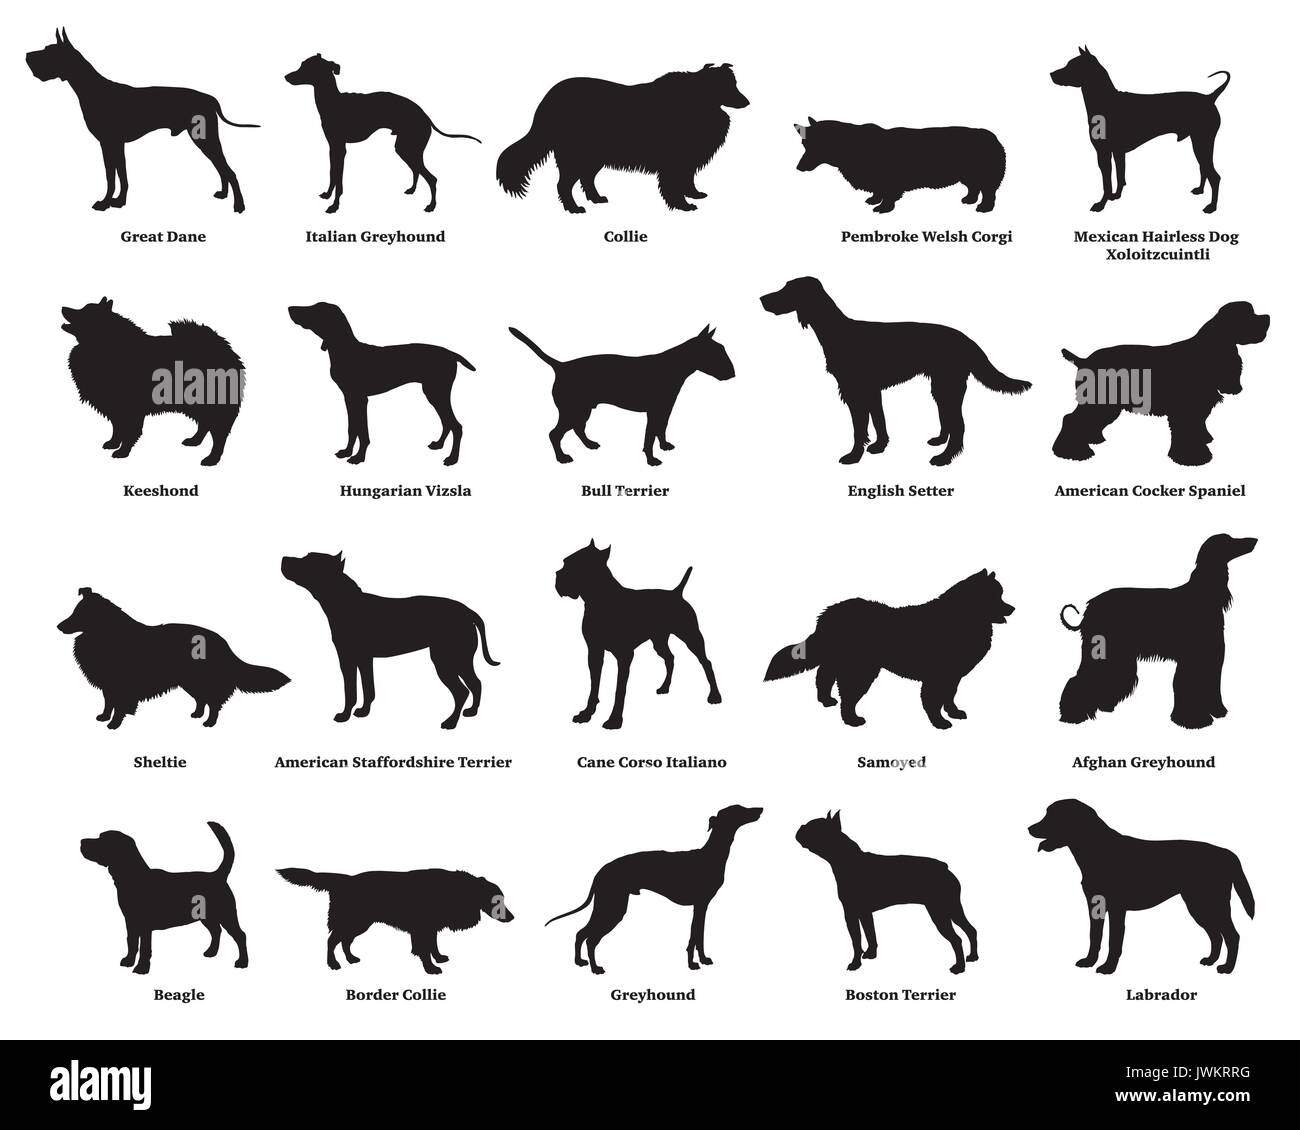 Vektor einrichten verschiedener Rassen hunde Silhouetten isoliert in schwarzer Farbe auf weißem Hintergrund. Teil 2 Stock Vektor